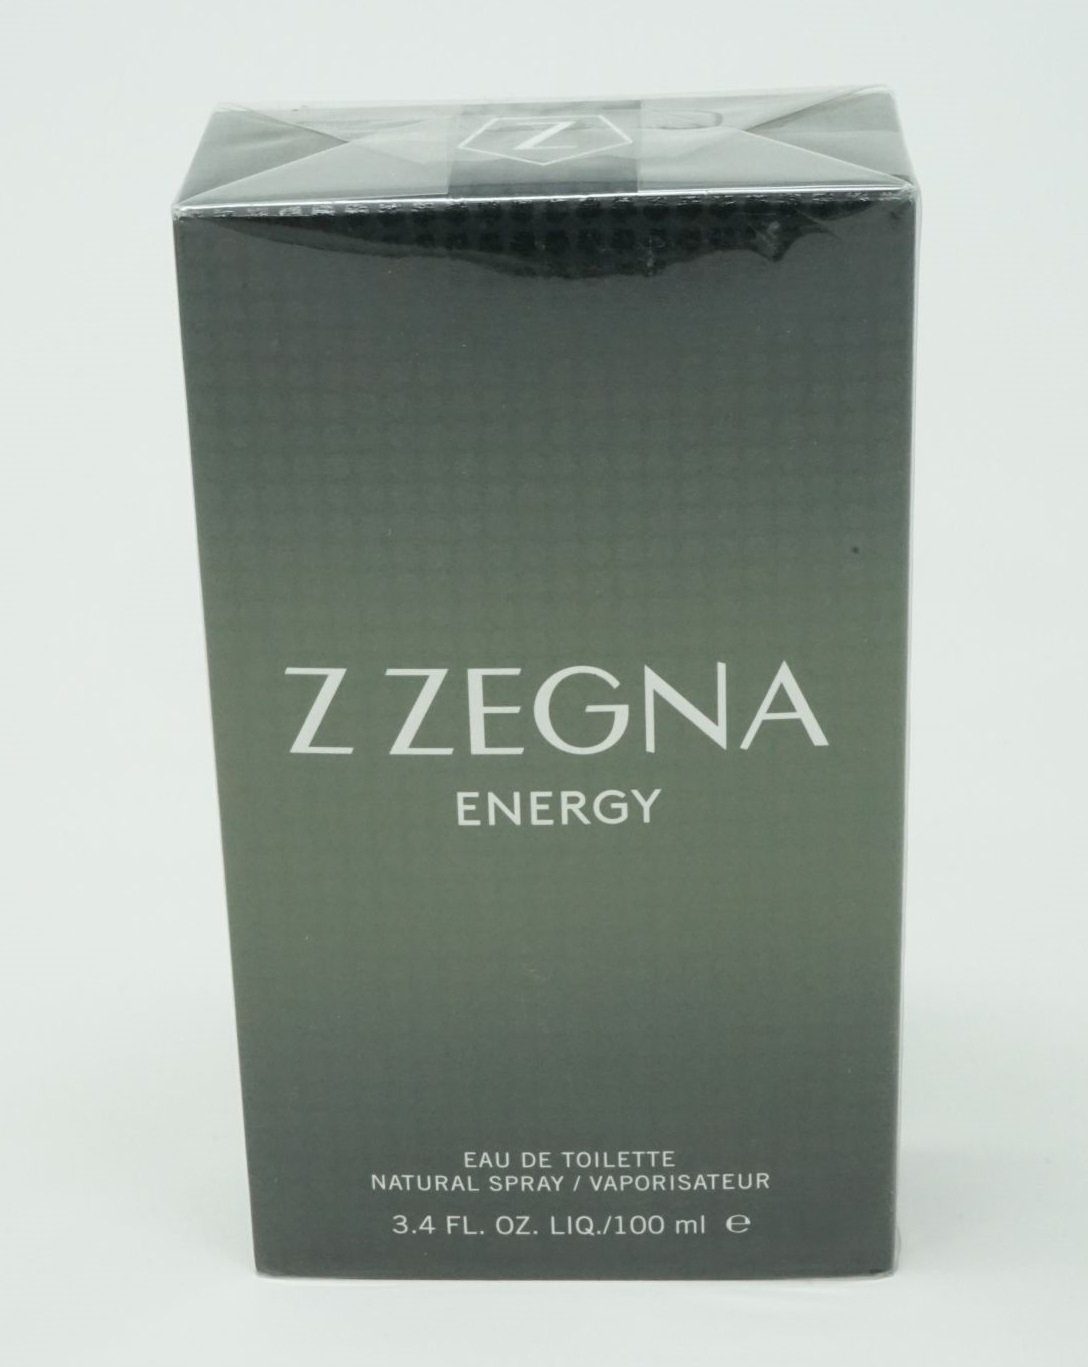 Ermenegildo Zegna Eau de de Toilette Zegna Zegna Toilette 100 Spray Z Energy Ermenegildo Eau ml